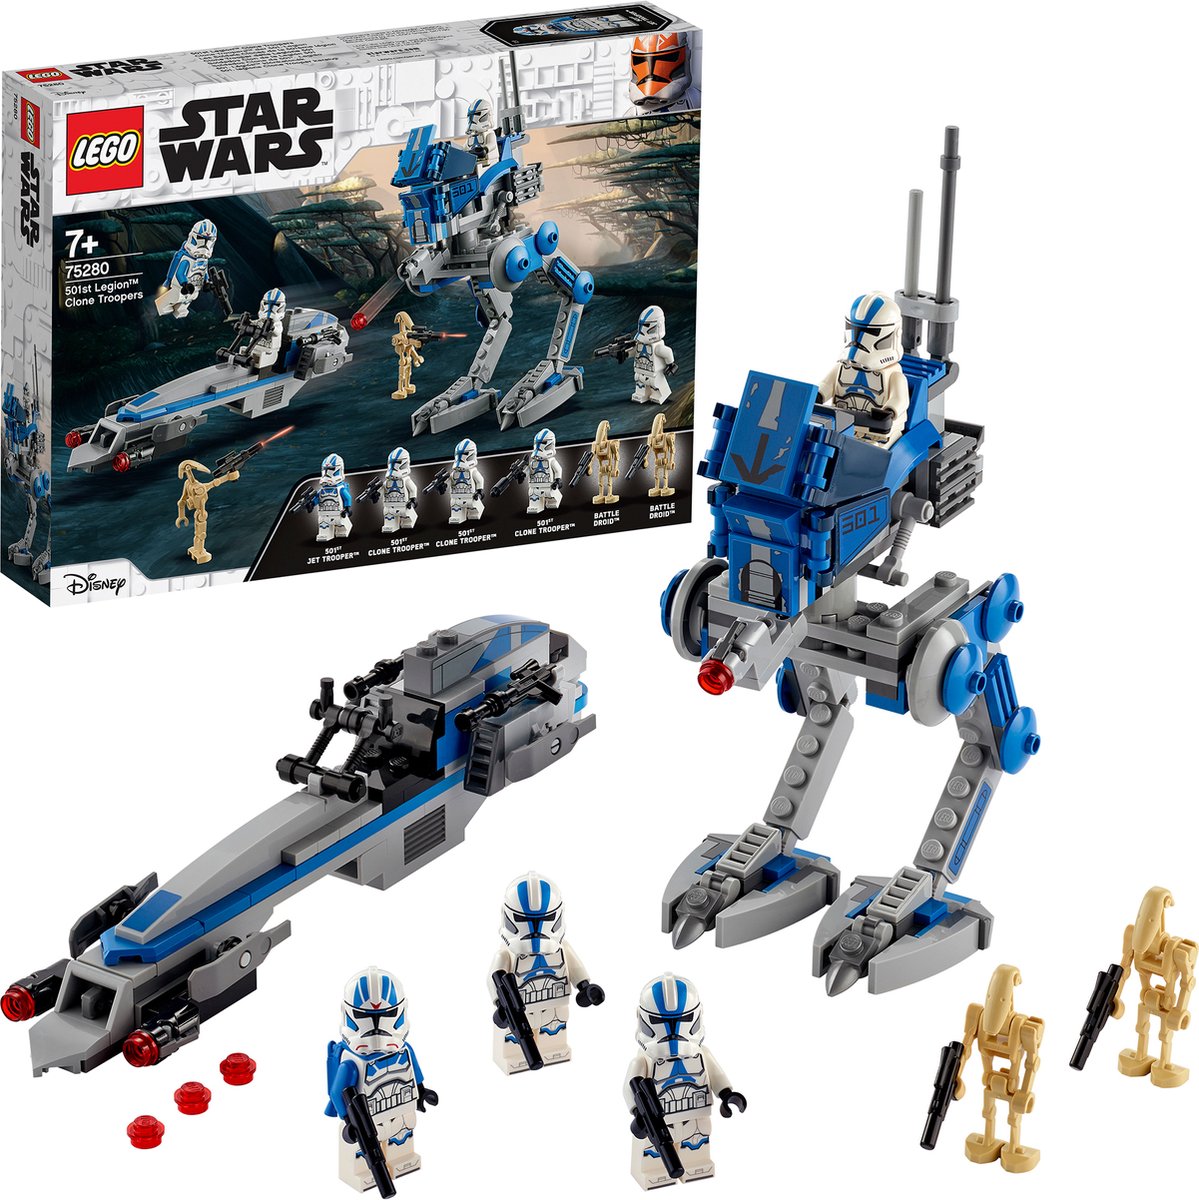 LEGO Star Wars 501st Legion Clone Troopers - 75280 | bol.com